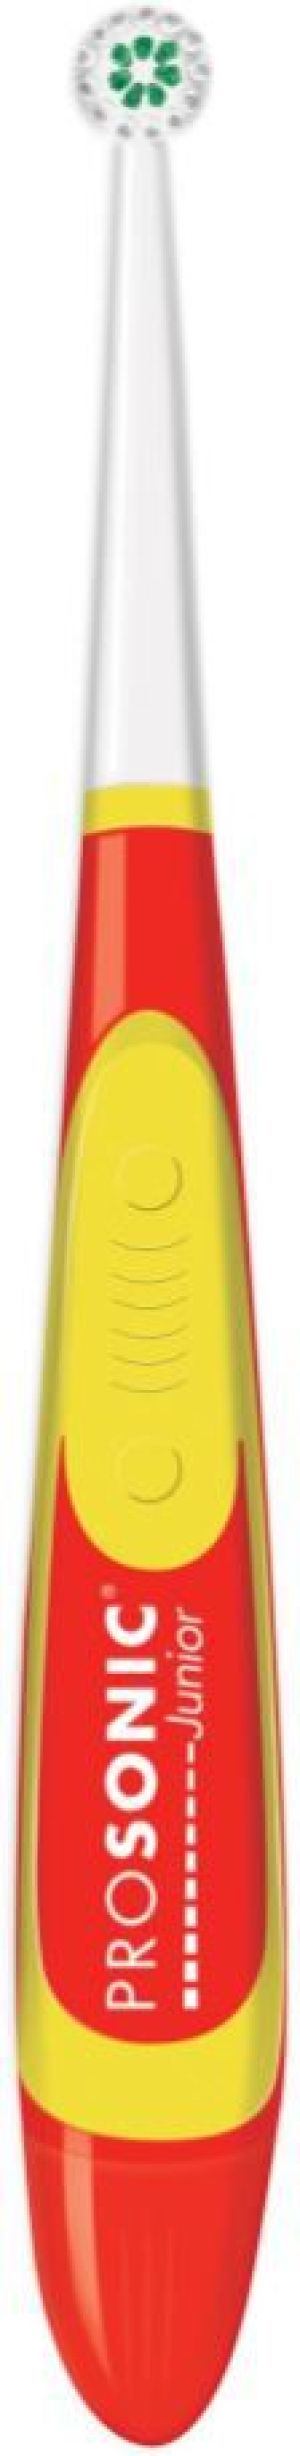 Szczoteczka Visiomed Prosonic Micro Junior Czerwono-żółta 1